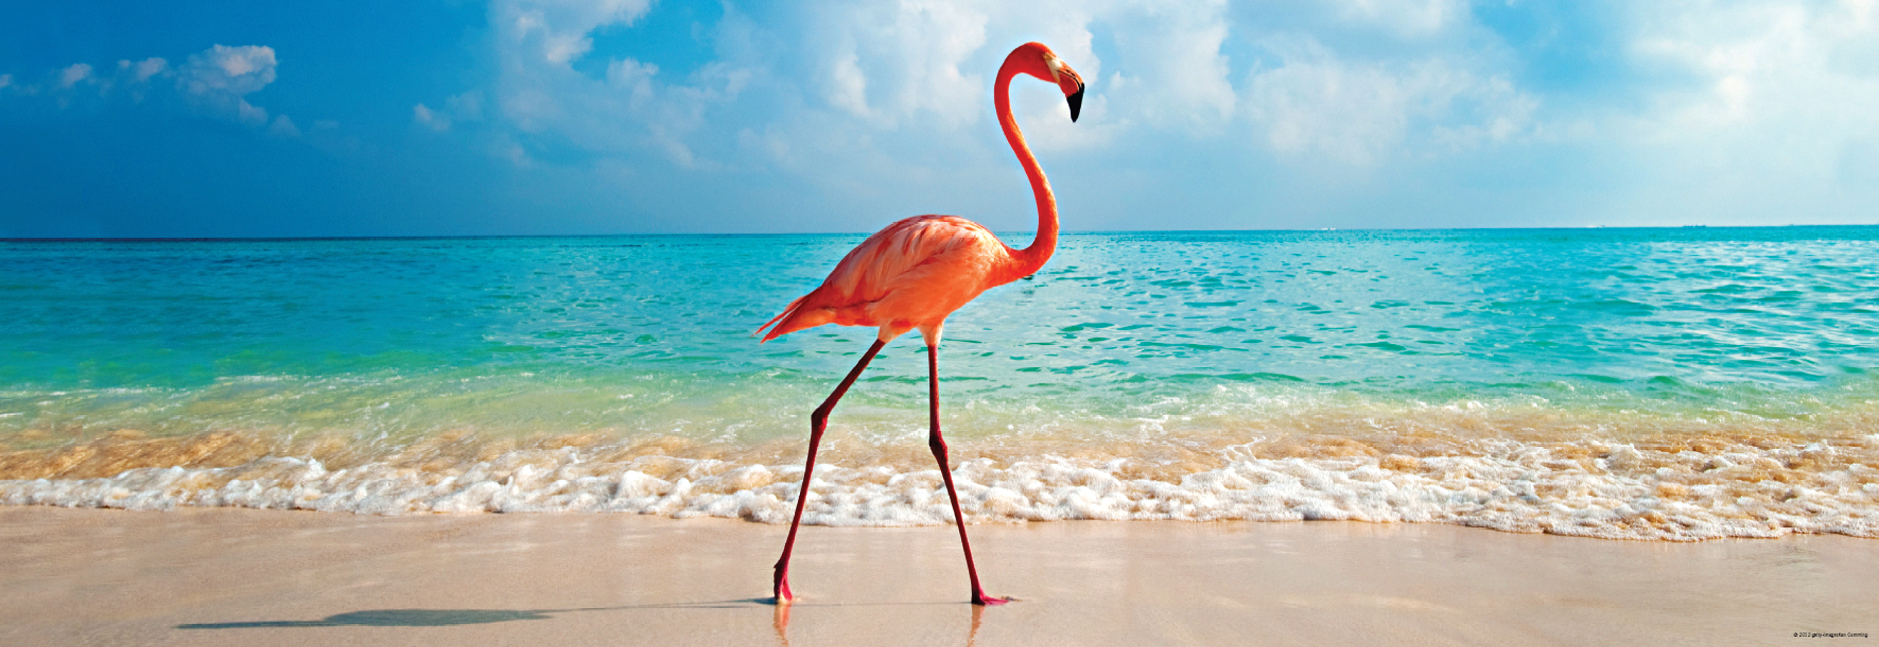 flamingo on sunny beach